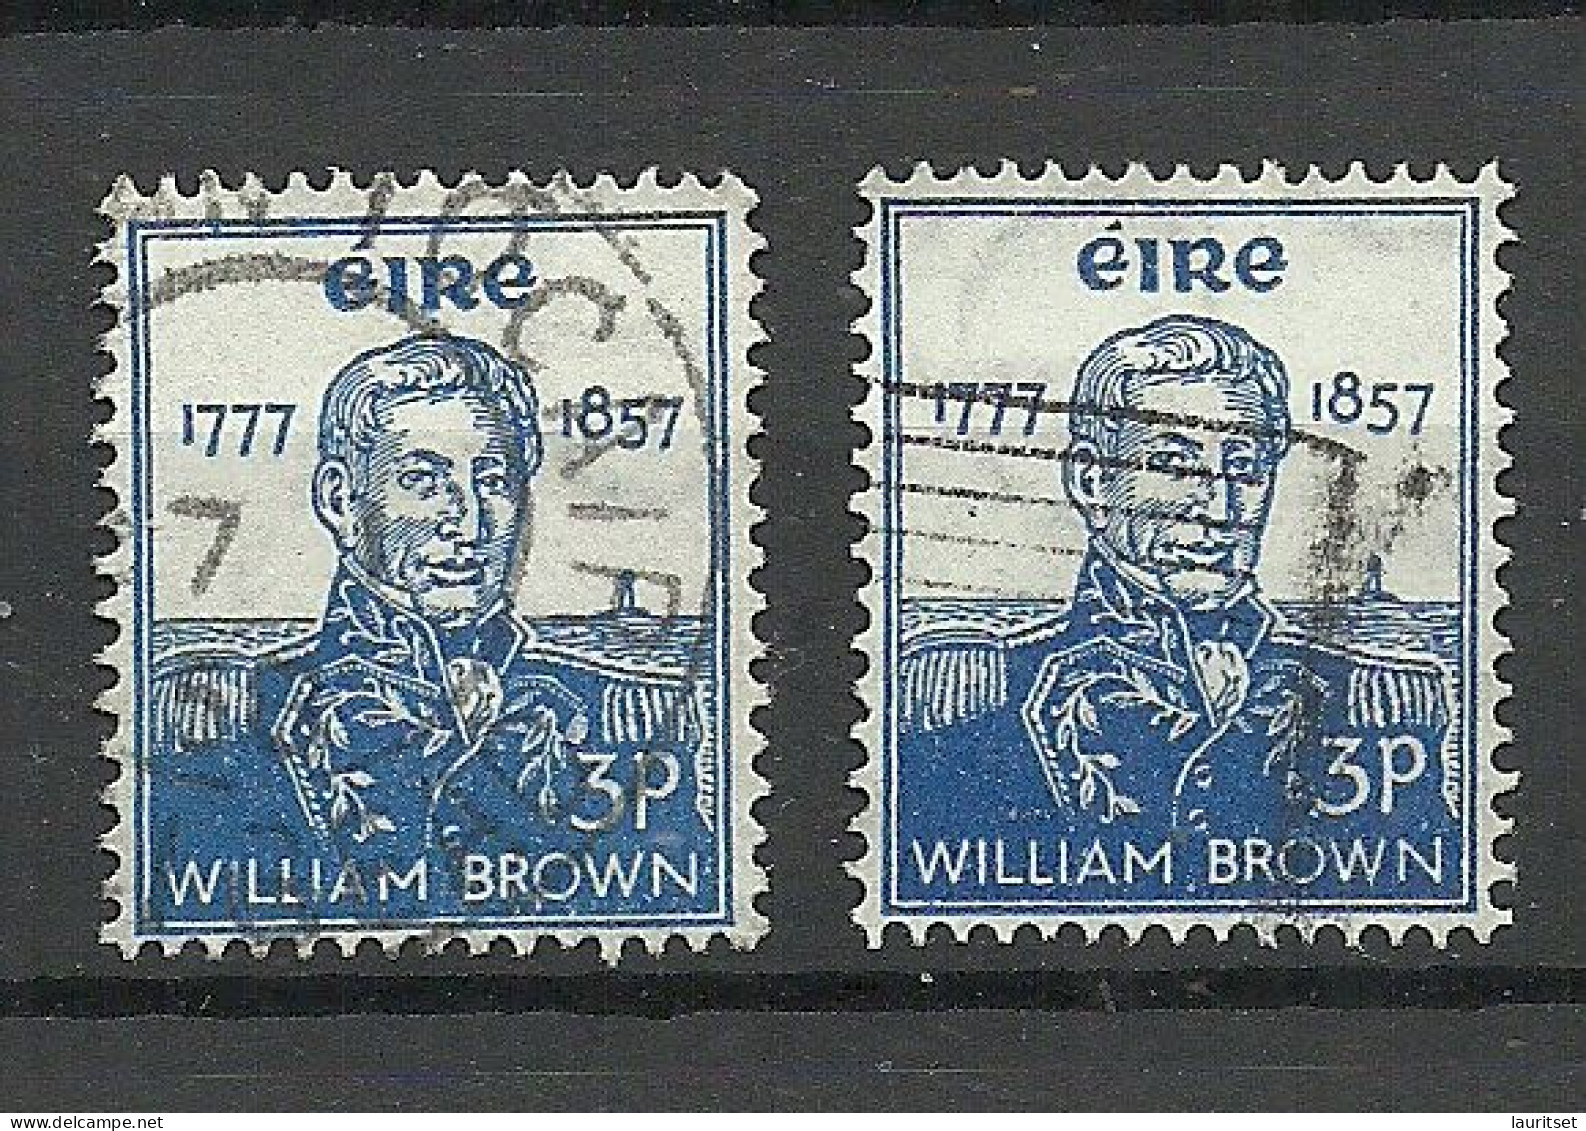 IRLAND IRELAND 1957 Michel 132 O William Brown. 2 Exemplares - Gebraucht